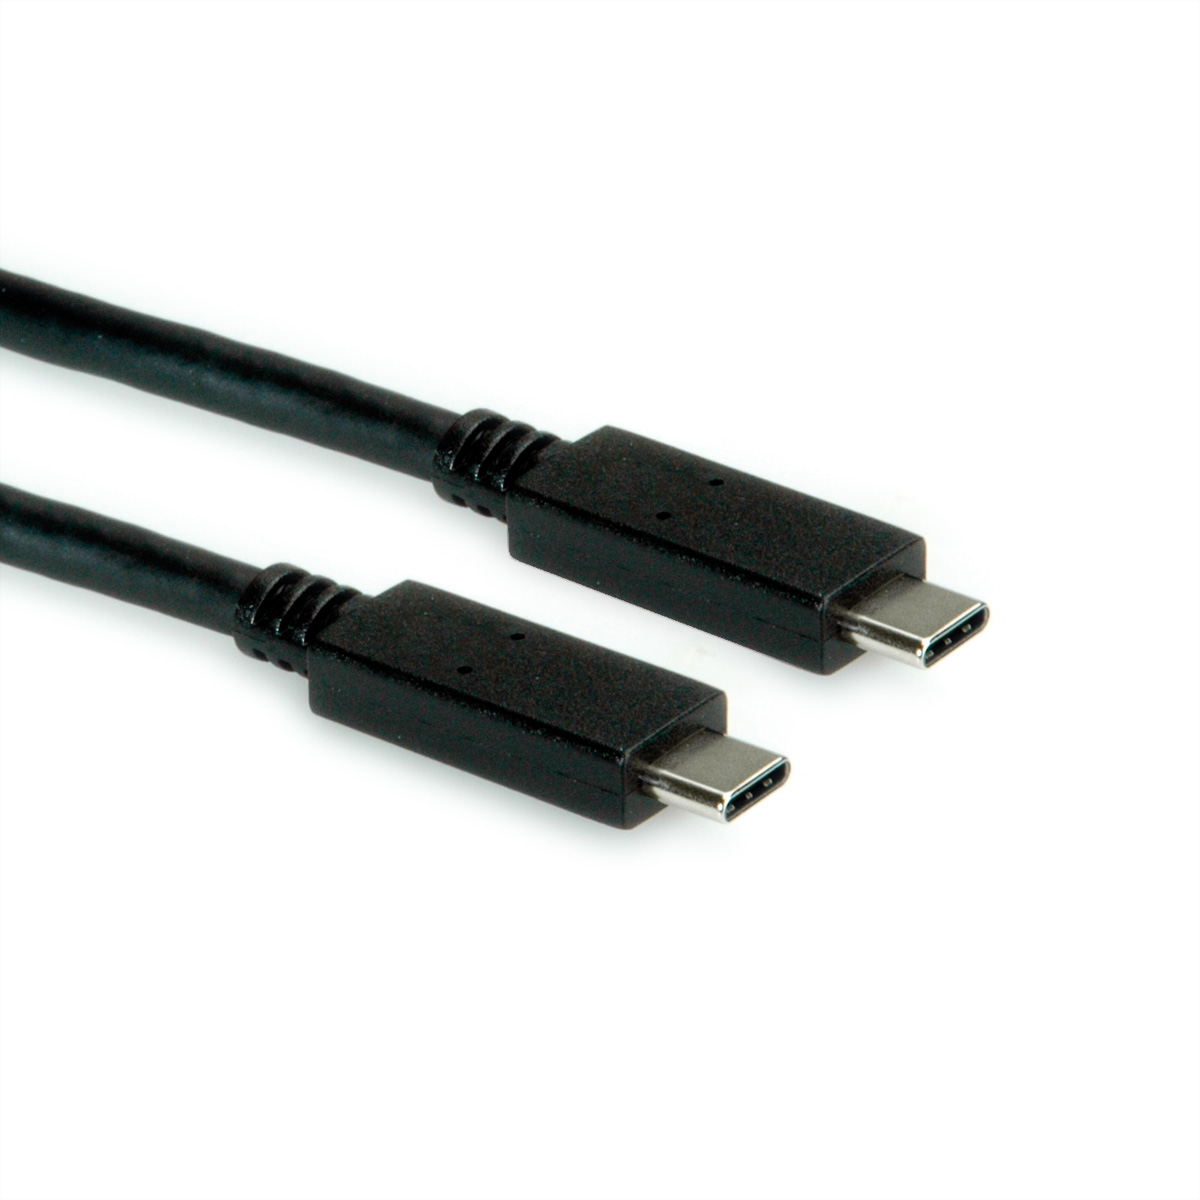 USB 3.2 USB ROLINE 3.2 GREEN Kabel, Kabel C-C, 2 ST/ST Gen